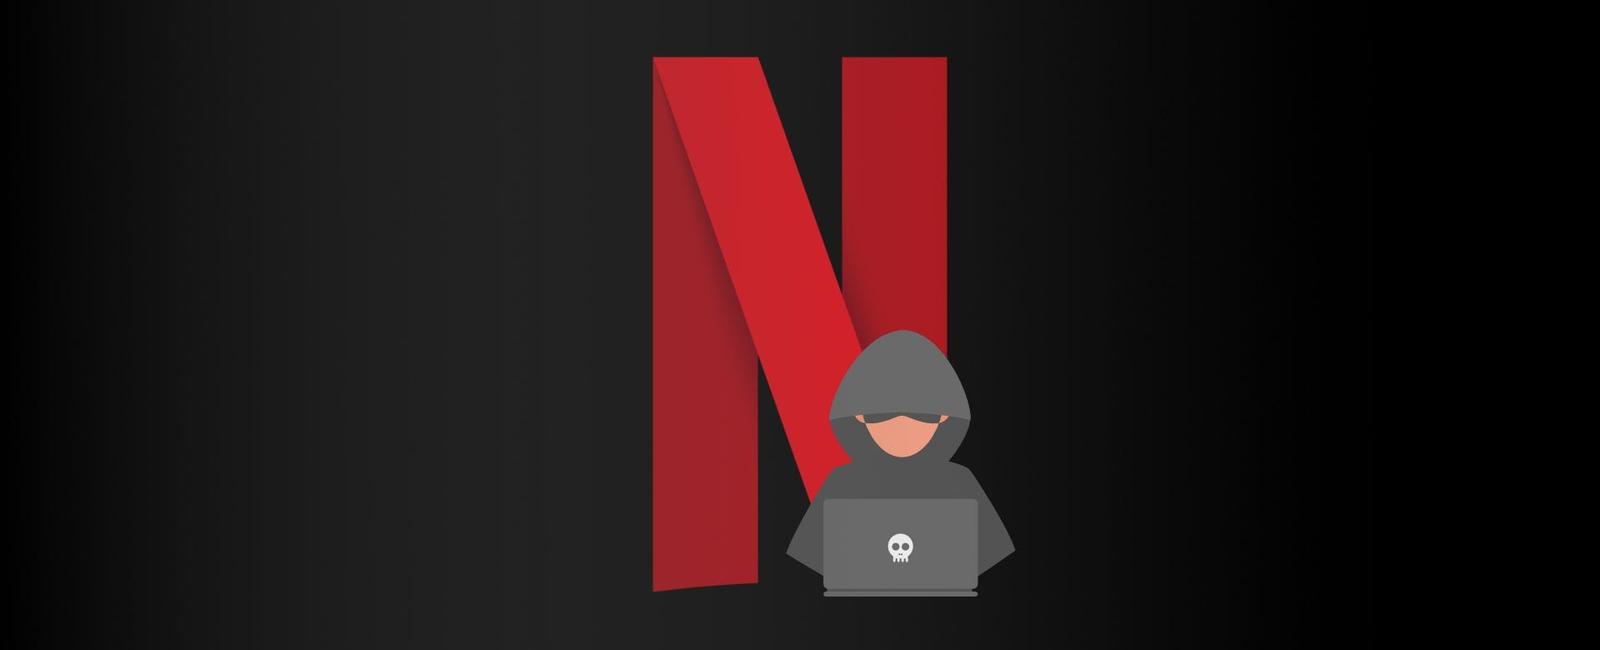 Phishing activo que suplanta identidad de Netflix